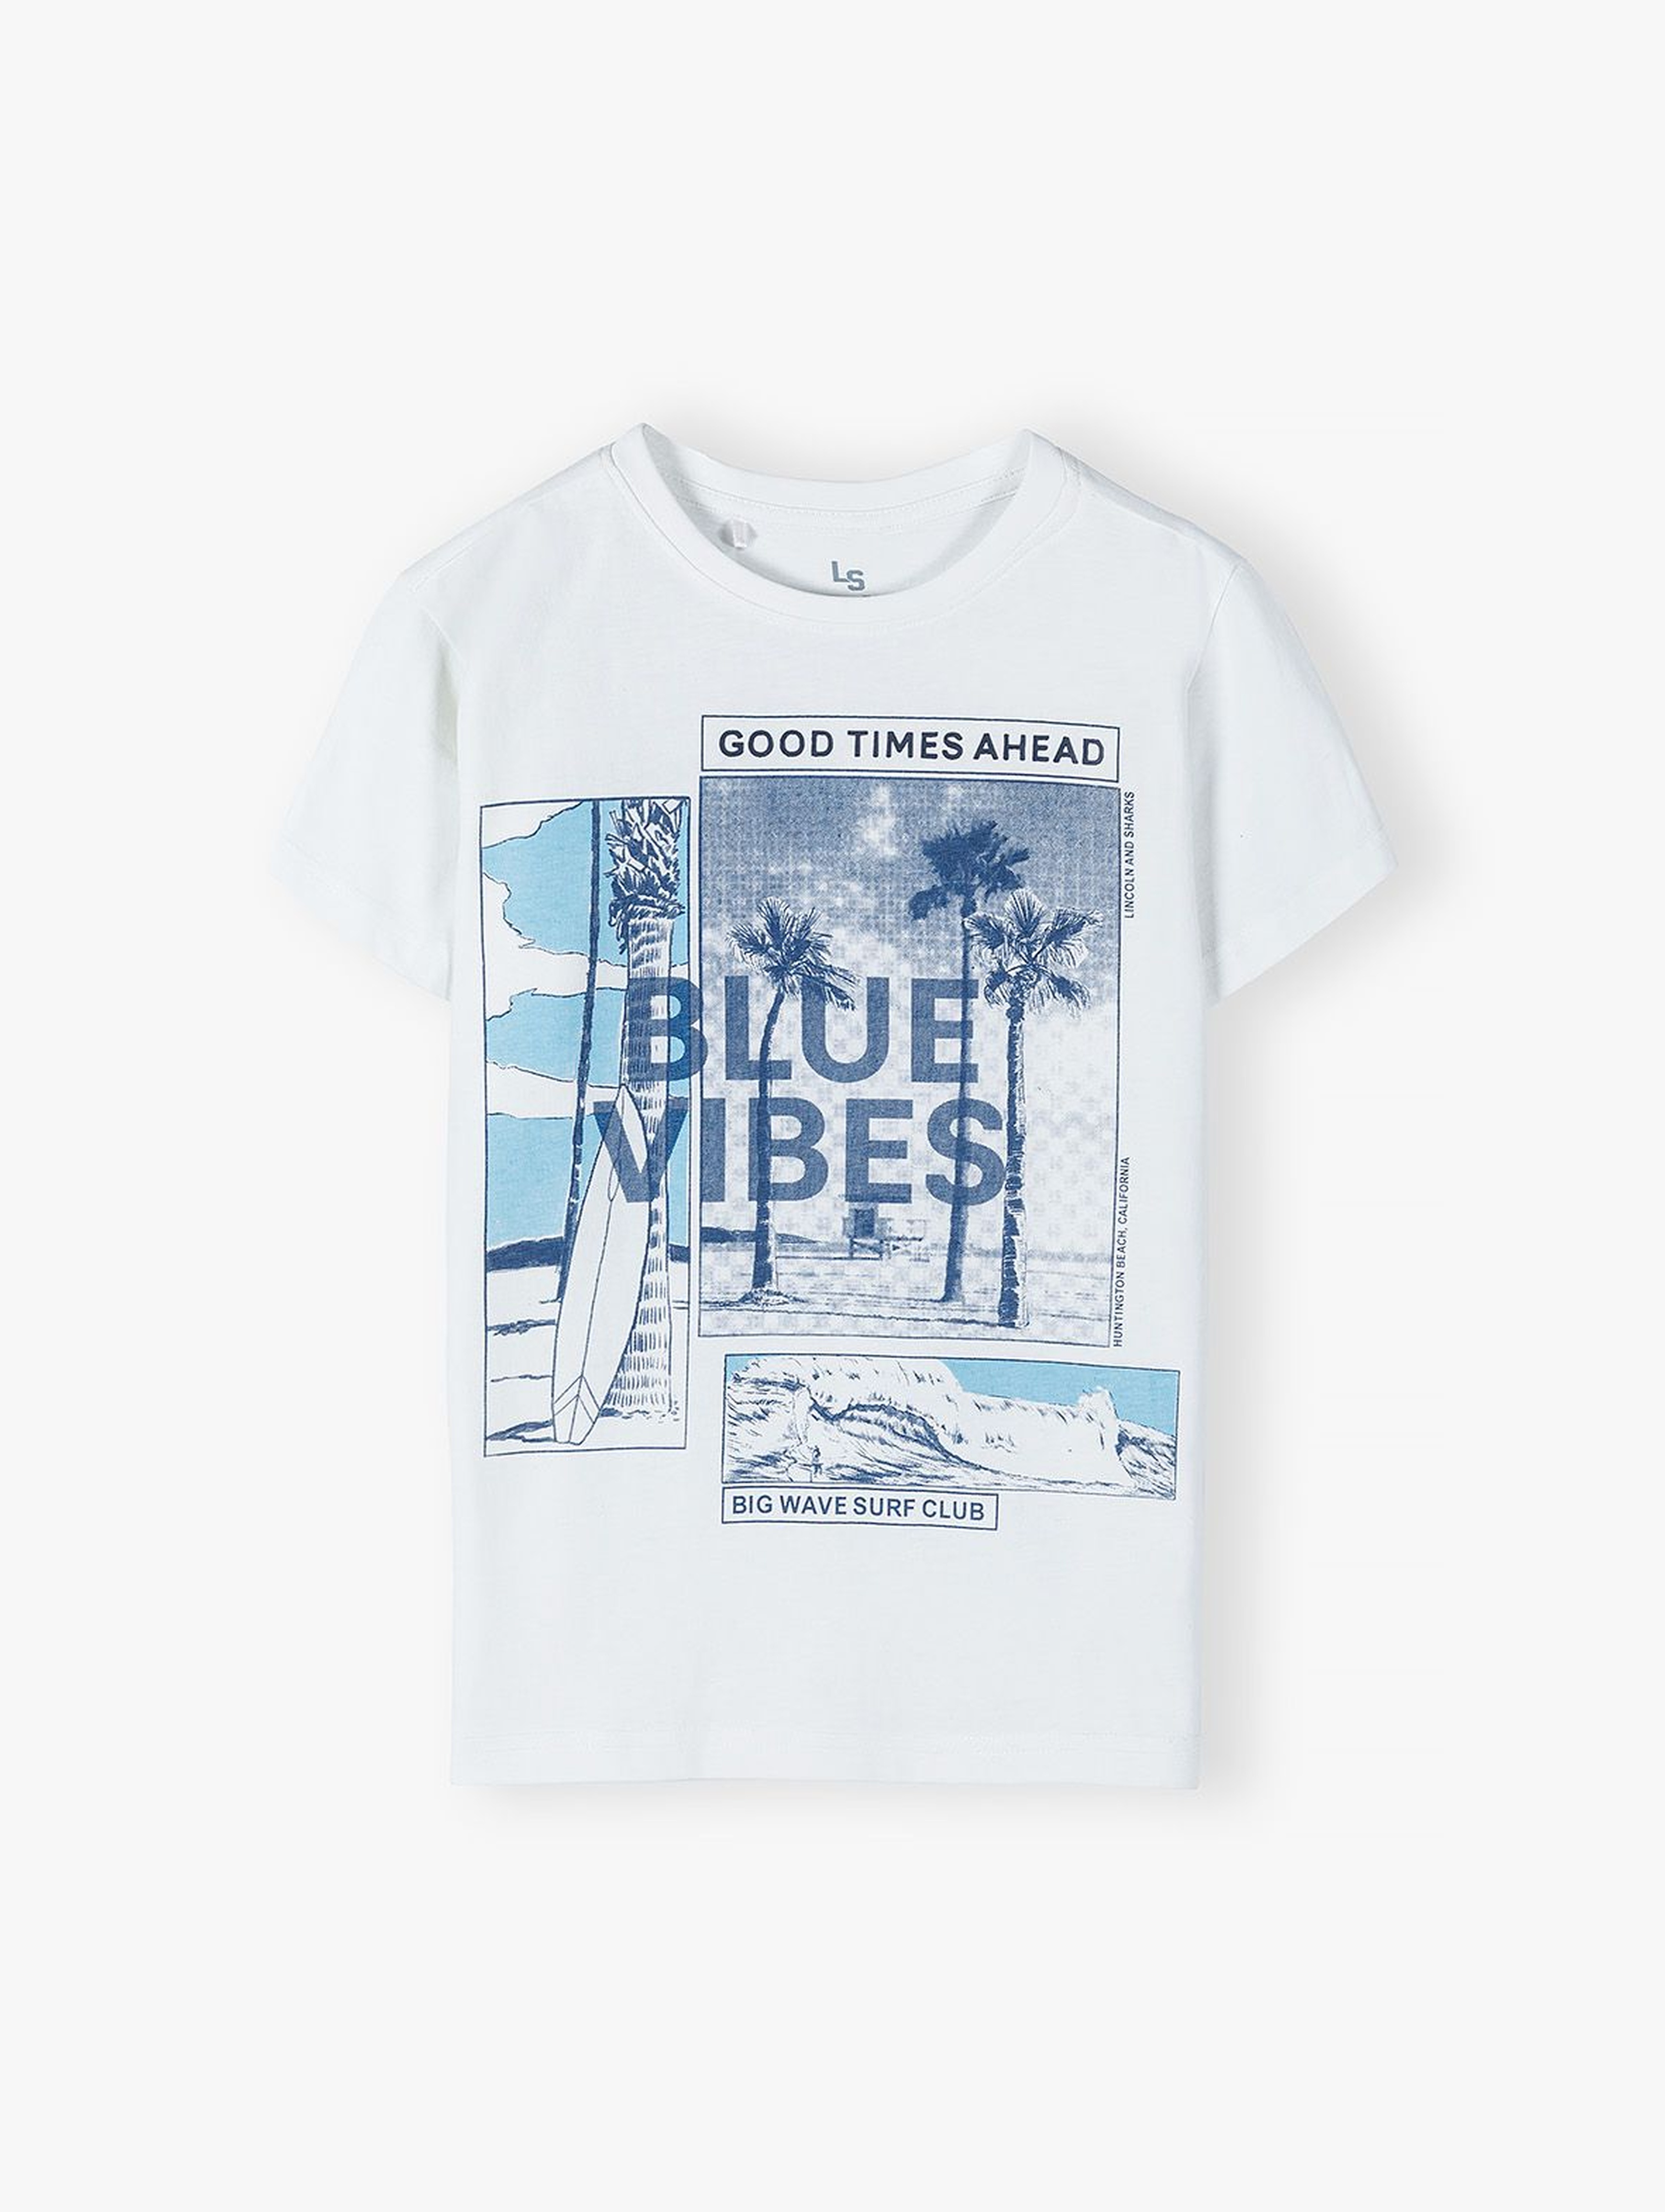 Bawełniany T-shirt dla chłopca z wakacyjnym nadrukiem